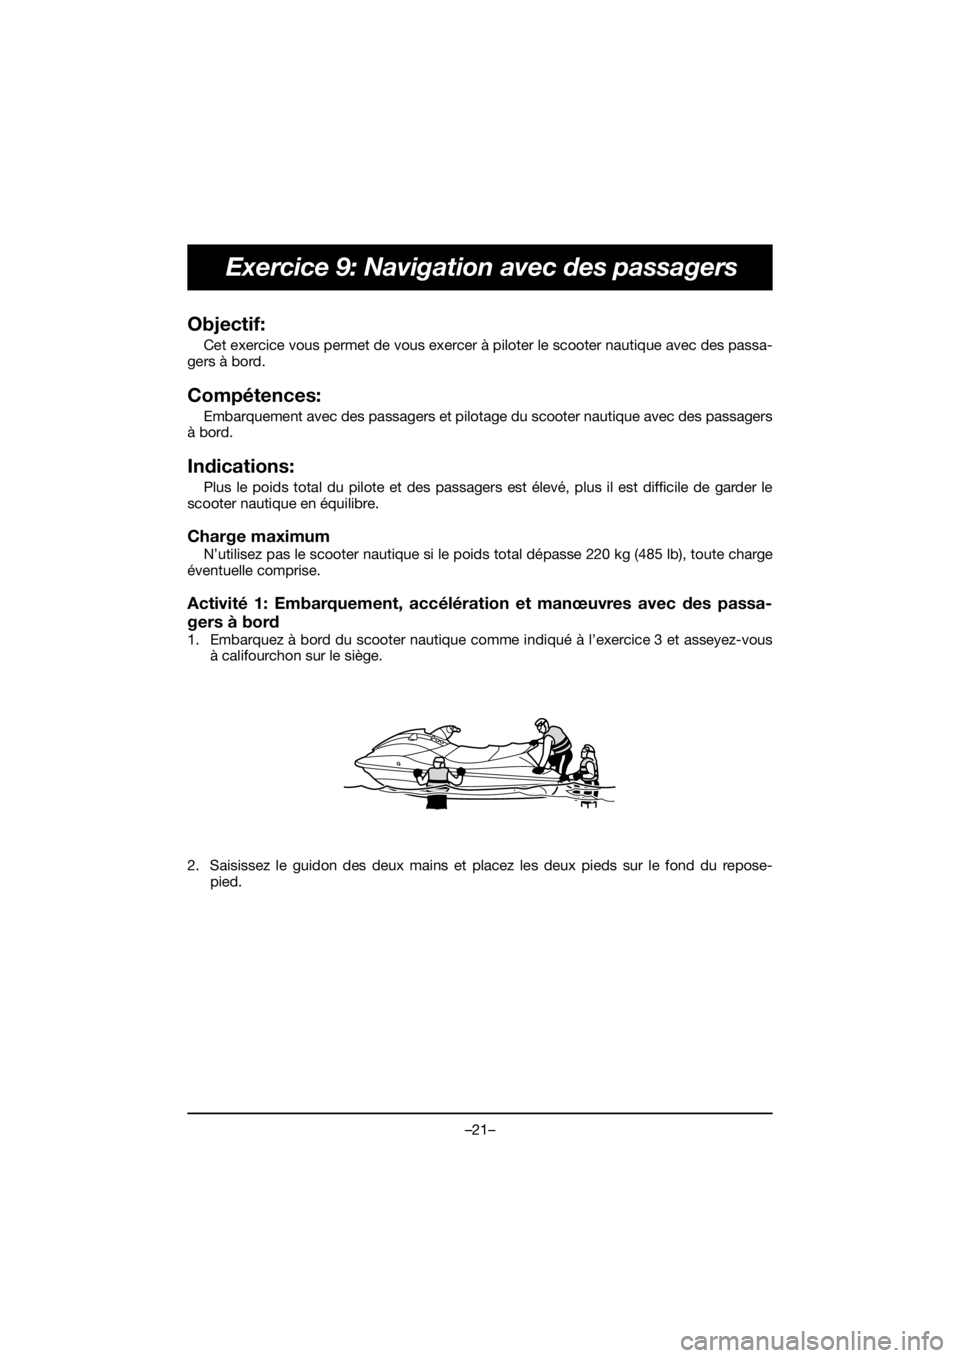 YAMAHA EX 2020 Service Manual –21–
Exercice 9: Navigation avec des passagers
Objectif: 
Cet exercice vous permet de vous exercer à piloter le scooter nautique avec des passa-
gers à bord.
Compétences: 
Embarquement avec des